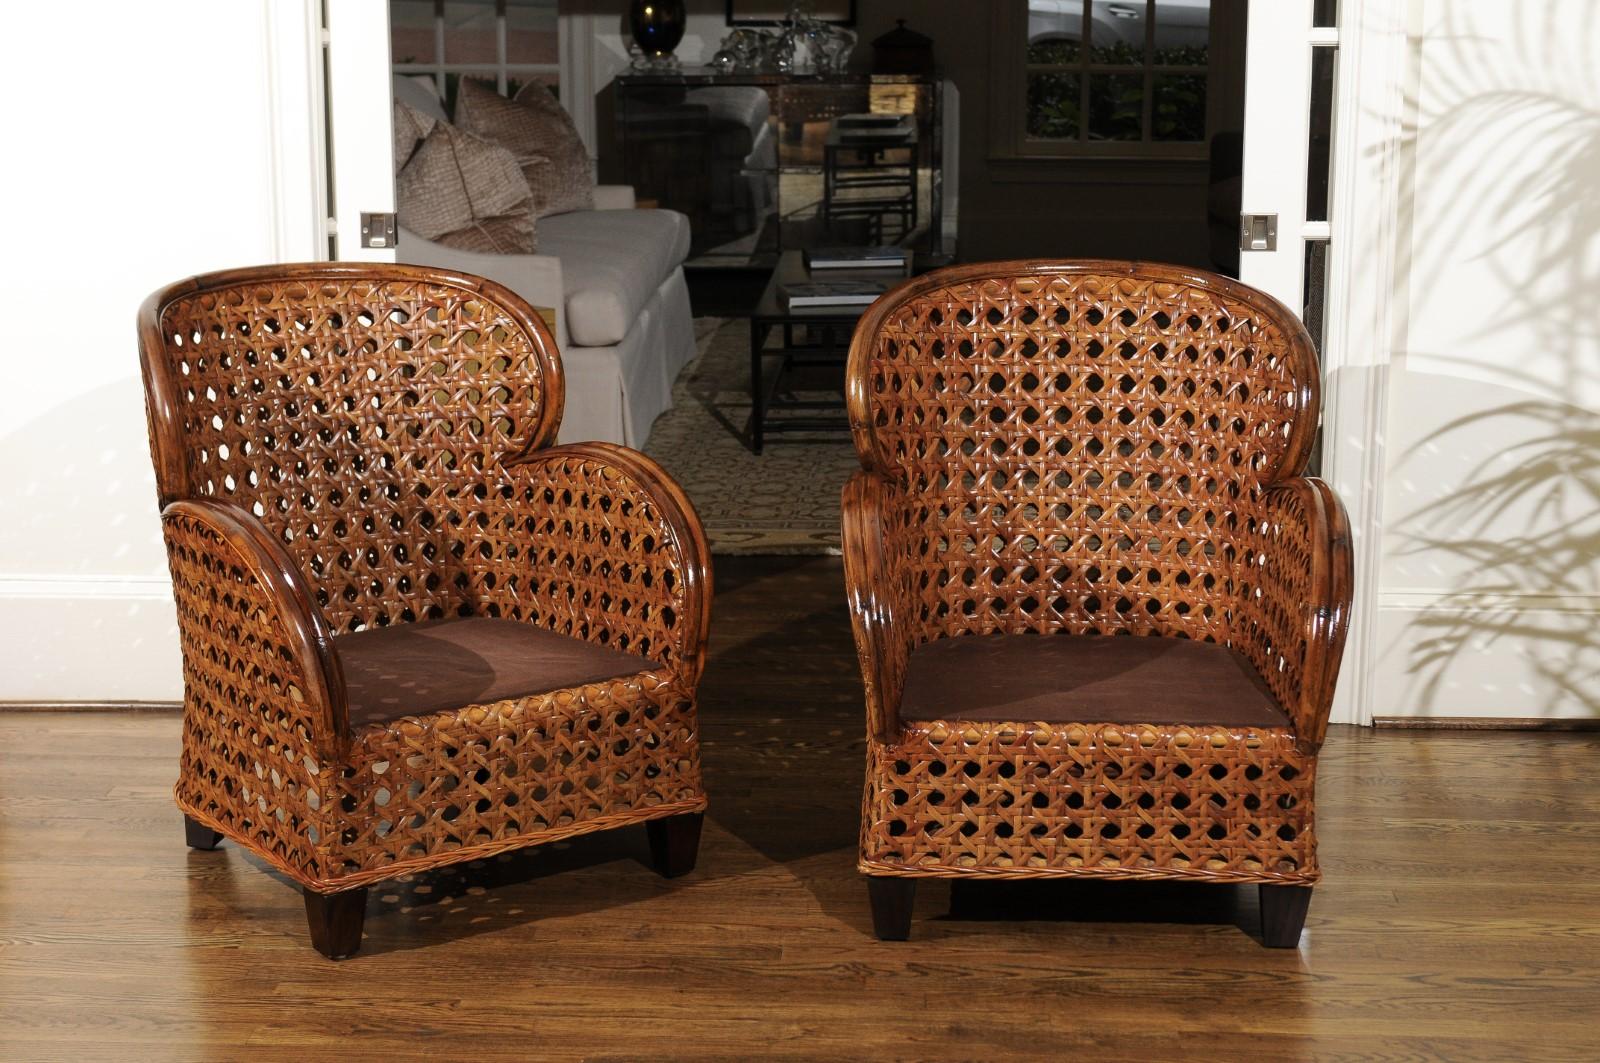 Une exquise paire de fauteuils club en rotin restaurés de style Art Déco Revival, vers 1980. Fabuleuse structure en rotin entièrement plaquée en canne française lourde. Le design, la qualité et l'artisanat sont plus qu'incroyables. Les pièces ont